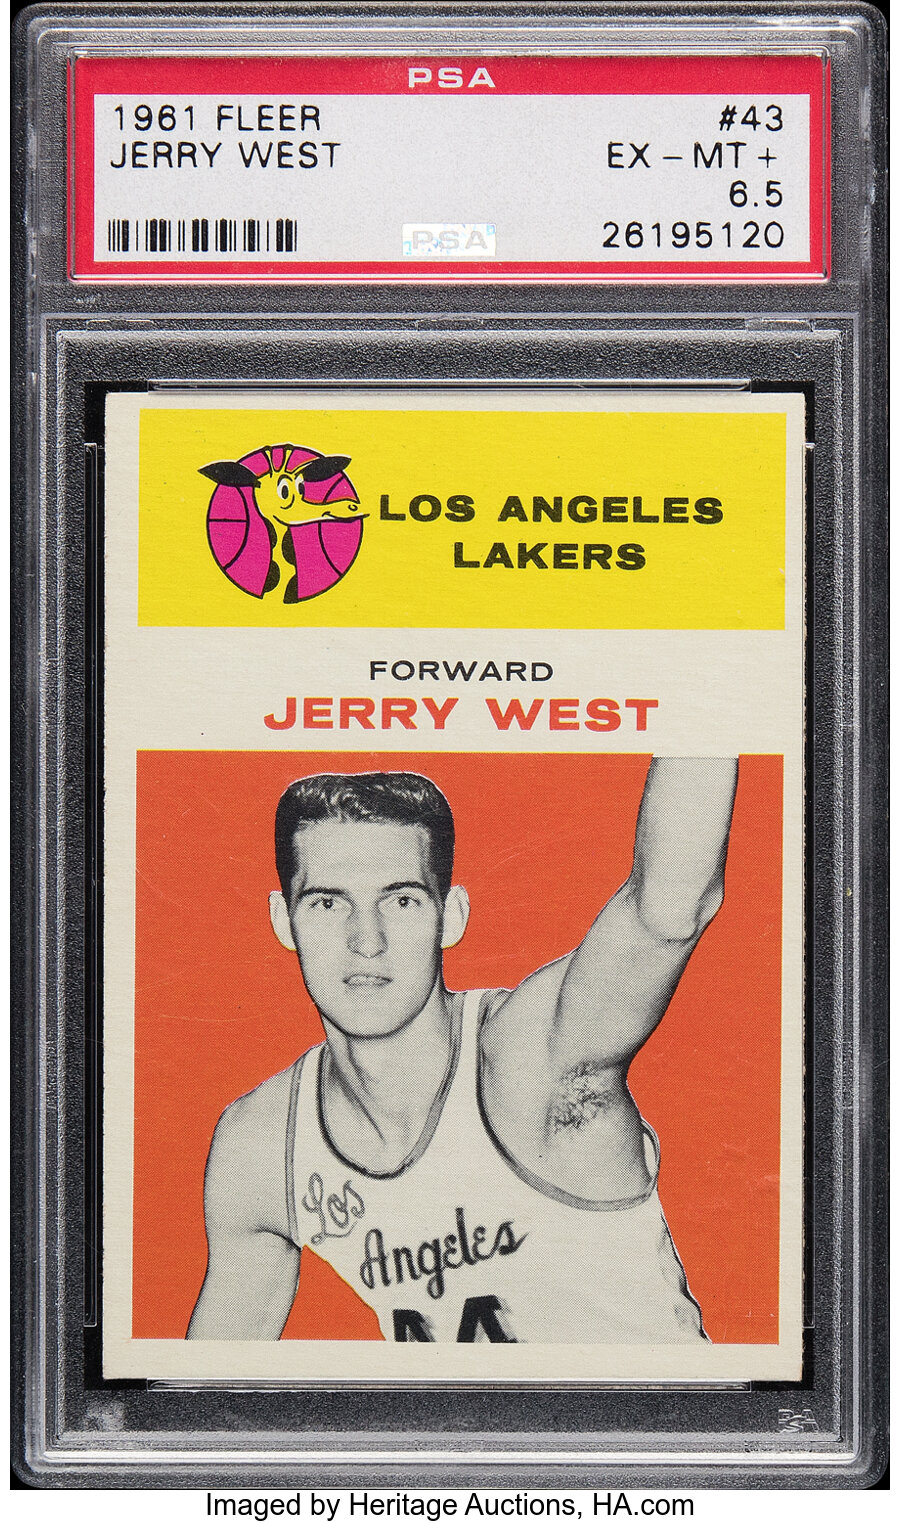 1961 Fleer Jerry West Rookie #43 PSA EX-MT+ 6.5